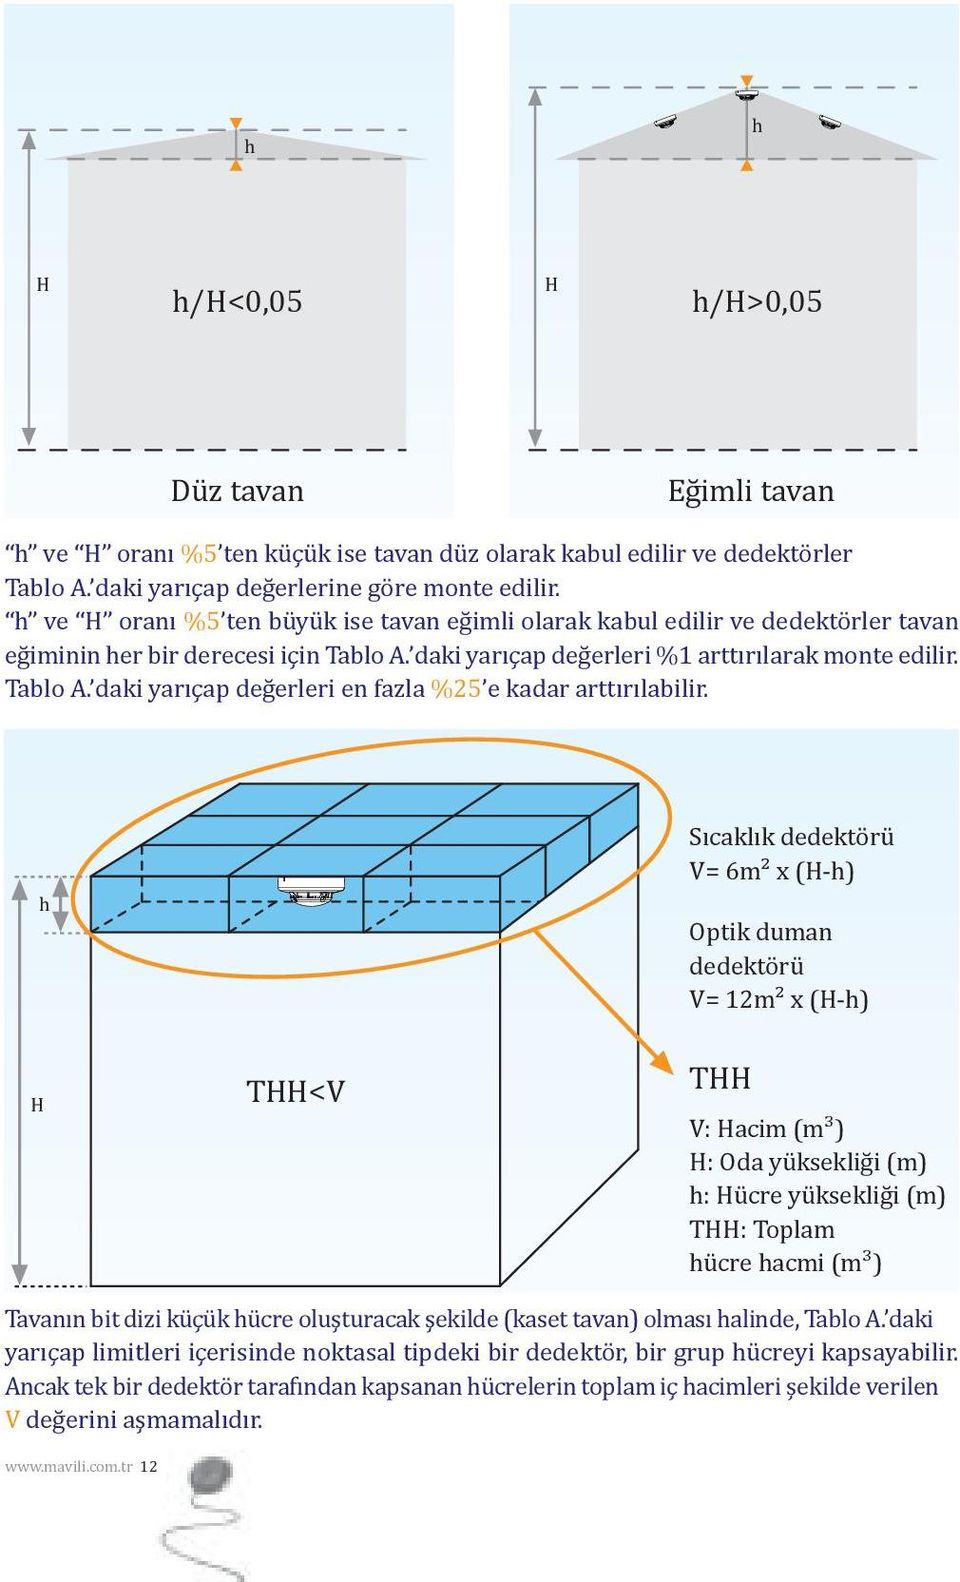 h Sıcaklık dedektörü V= 6m² x (H-h) Optik duman dedektörü V= 12m² x (H-h) H THH<V THH V: Hacim (m³) H: Oda yüksekliği (m) h: Hücre yüksekliği (m) THH: Toplam hücre hacmi (m³) Tavanın bit dizi küçük